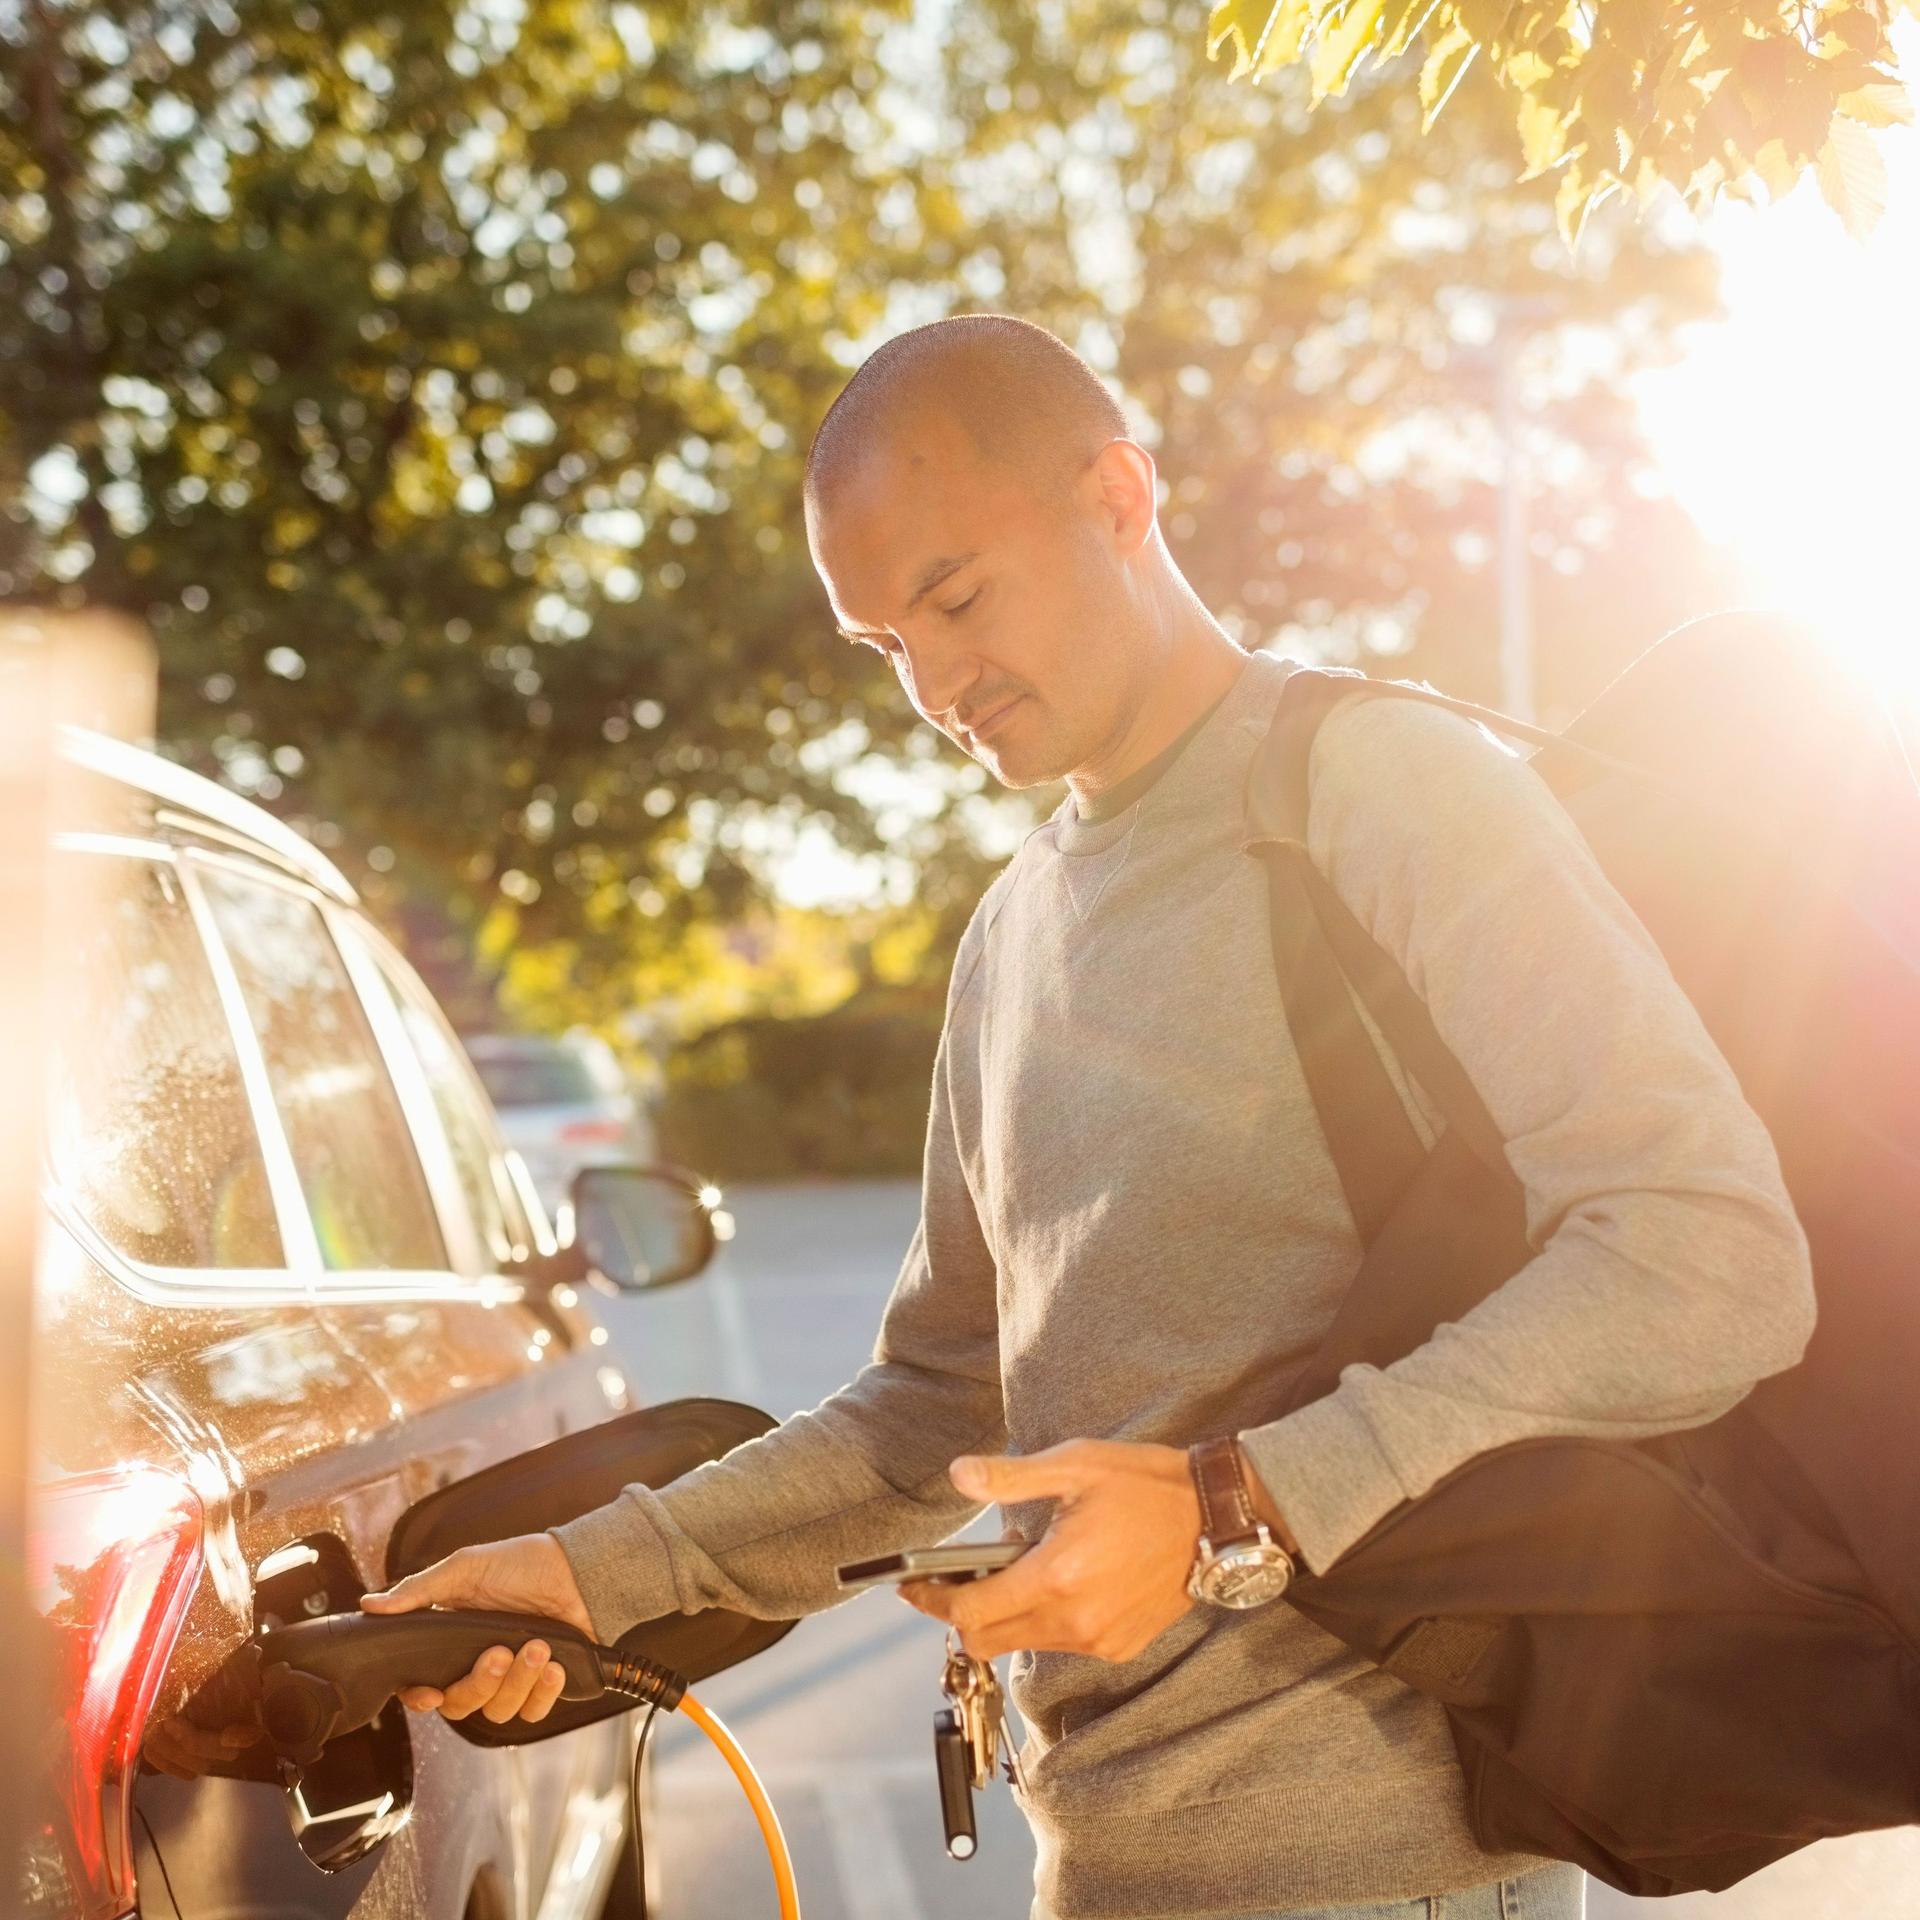 Ein Mann lädt bei Sonnenschein ein Elektroauto auf . Dabei schaut er in sein Smartphone.